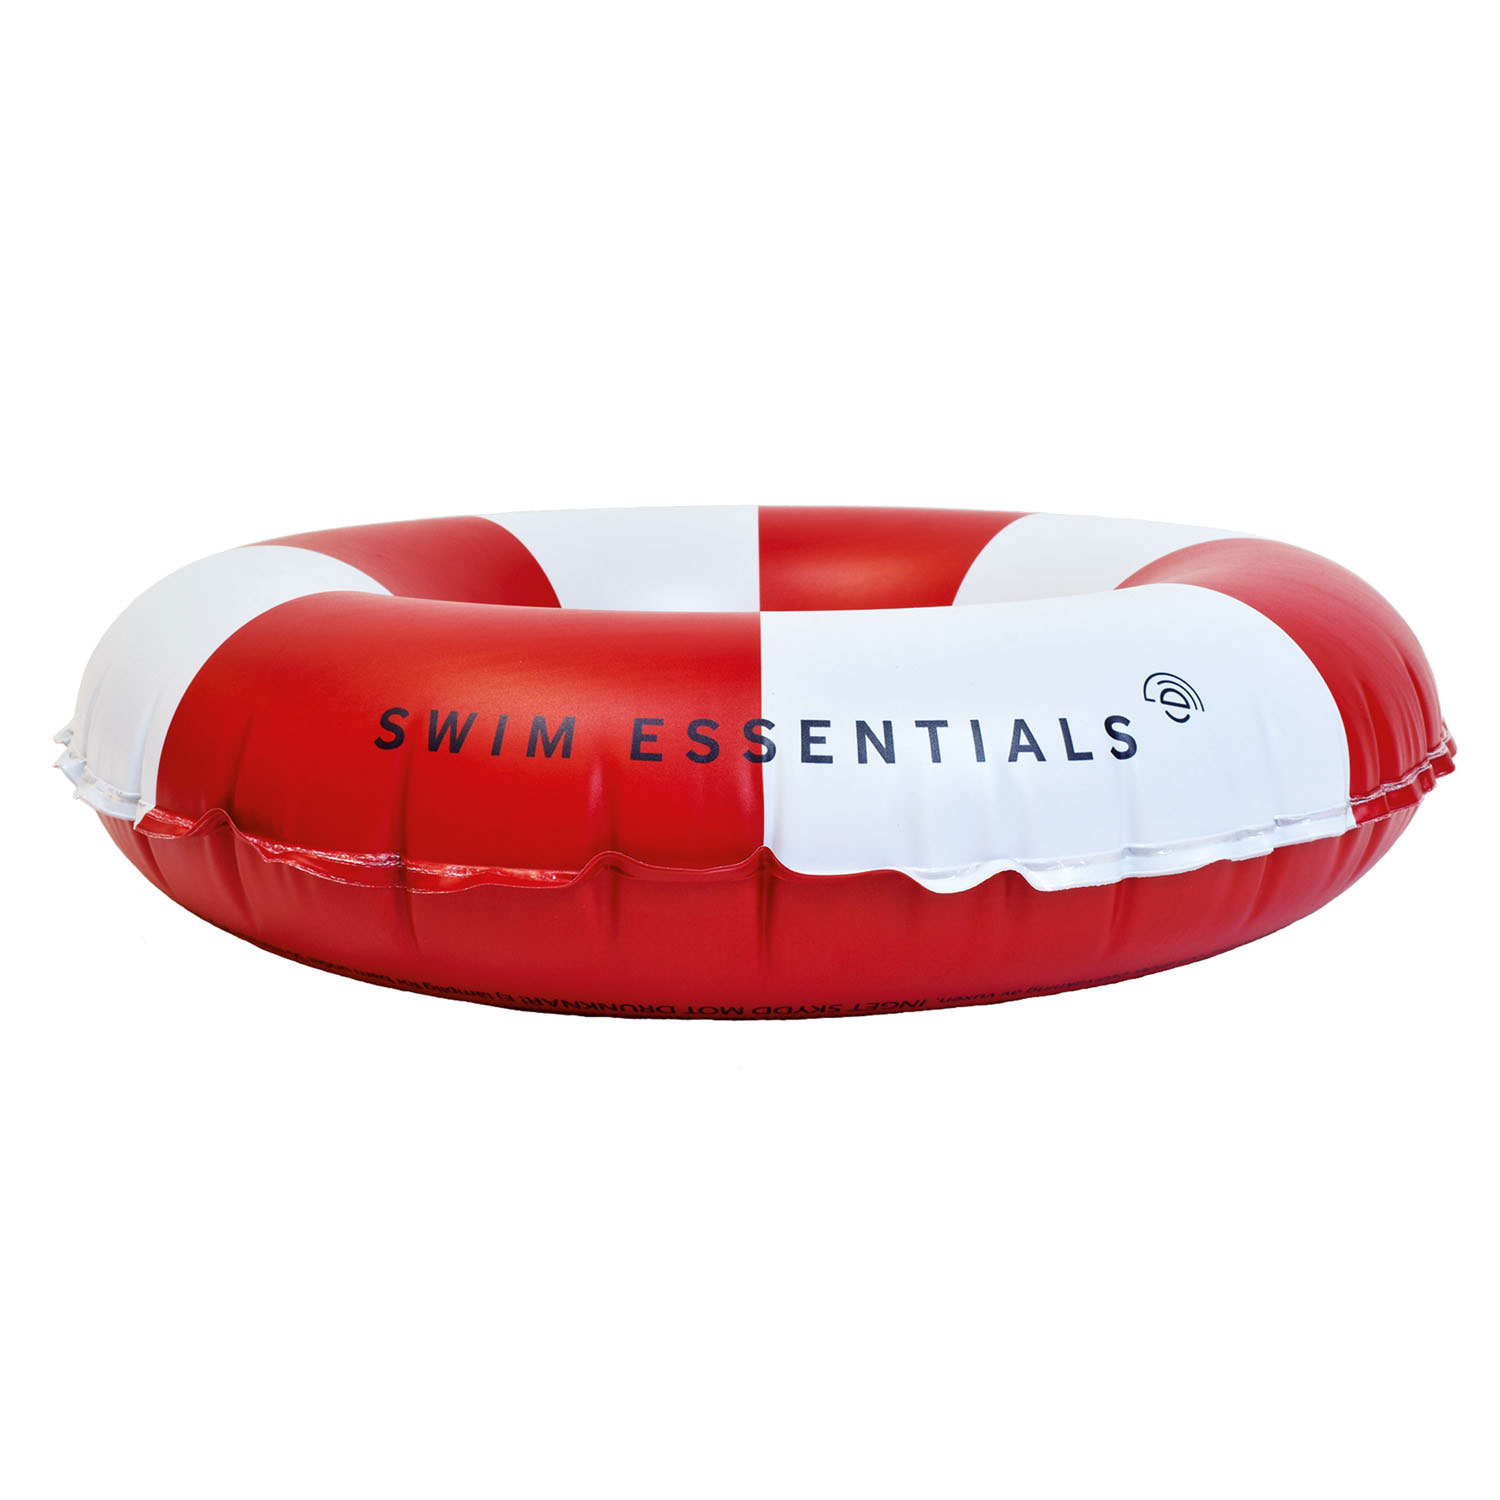 Badespielzeug - Schwimmring - rot/weiß - 90cm - Swim Essentials - Streifen